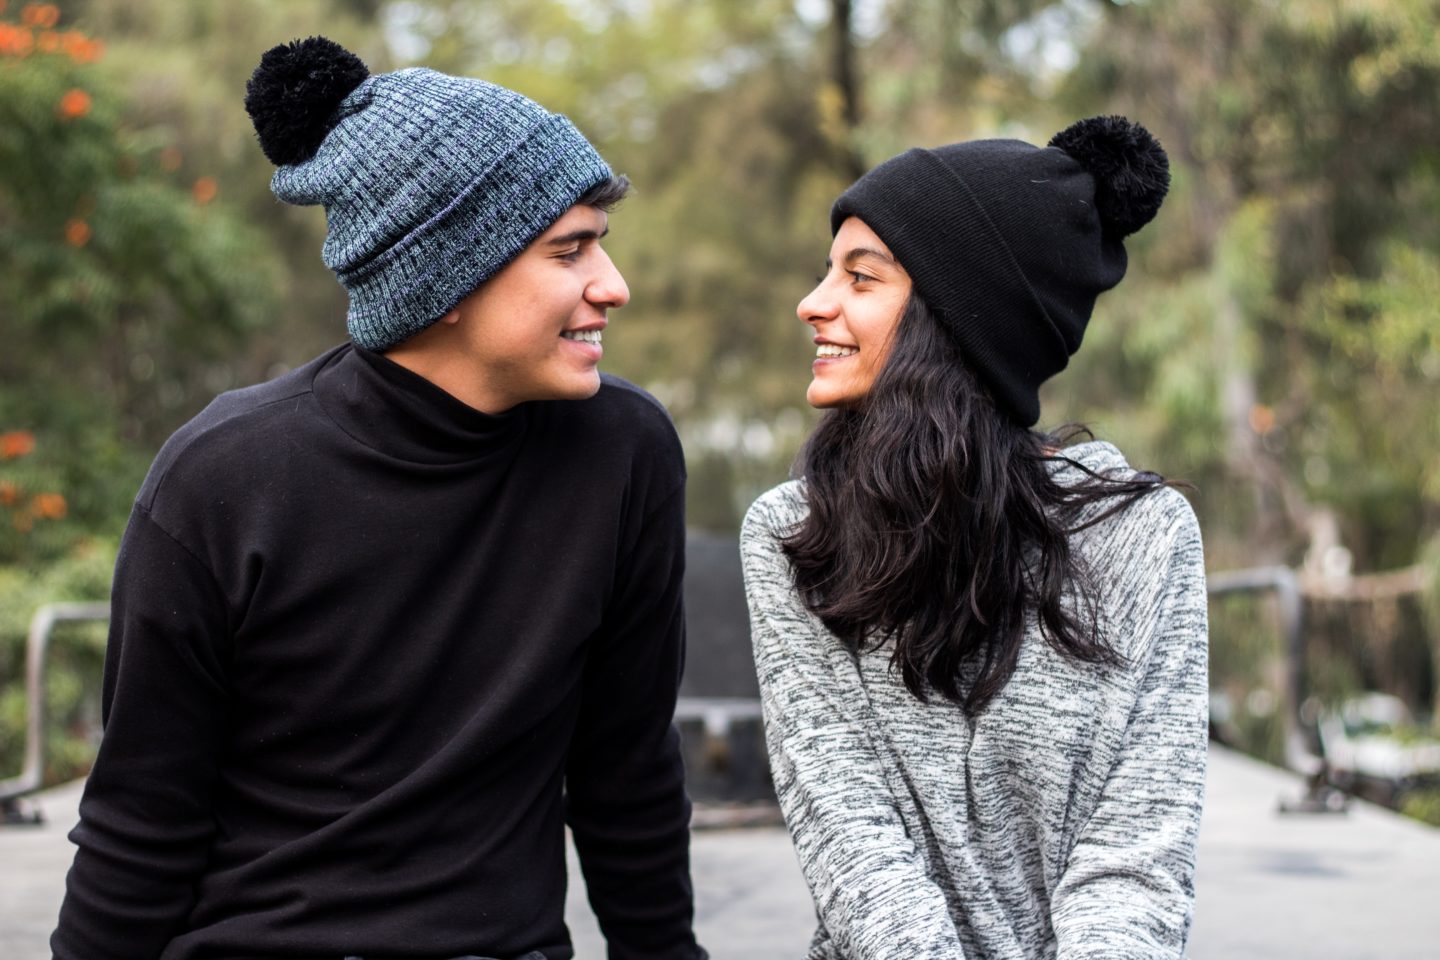 Un homme et une femme, dehors en pull avec des bonnets sur la tête, se regardent en souriant